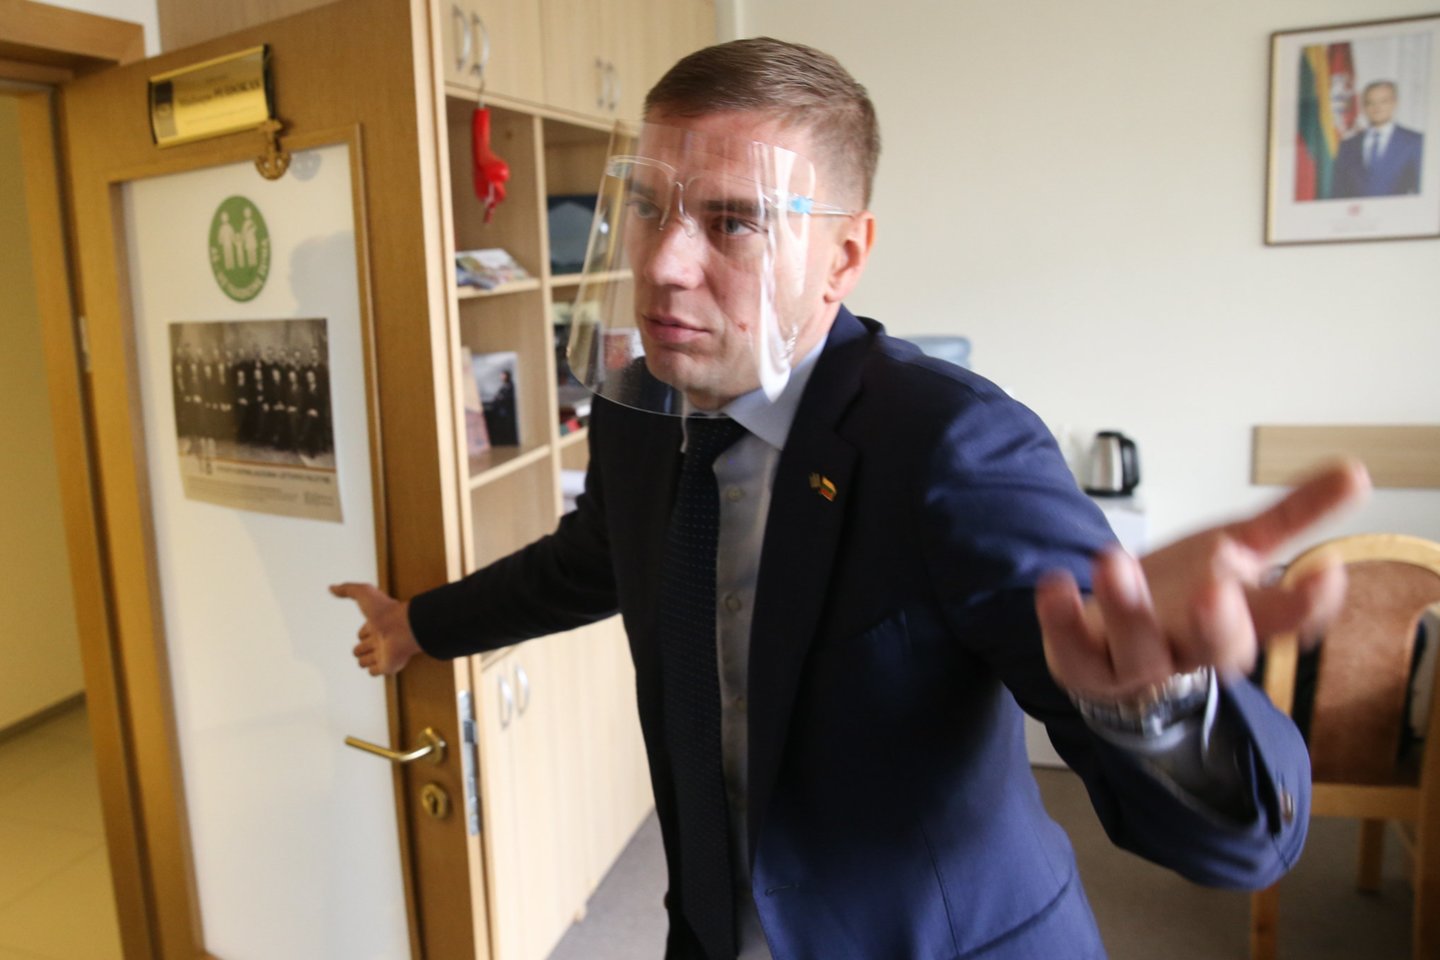 Seimo Darbo partijos frakcijos nario Mindaugo Puidoko kabinete ketvirtadienį atlikta krata.<br>R.Danisevičiaus nuotr.